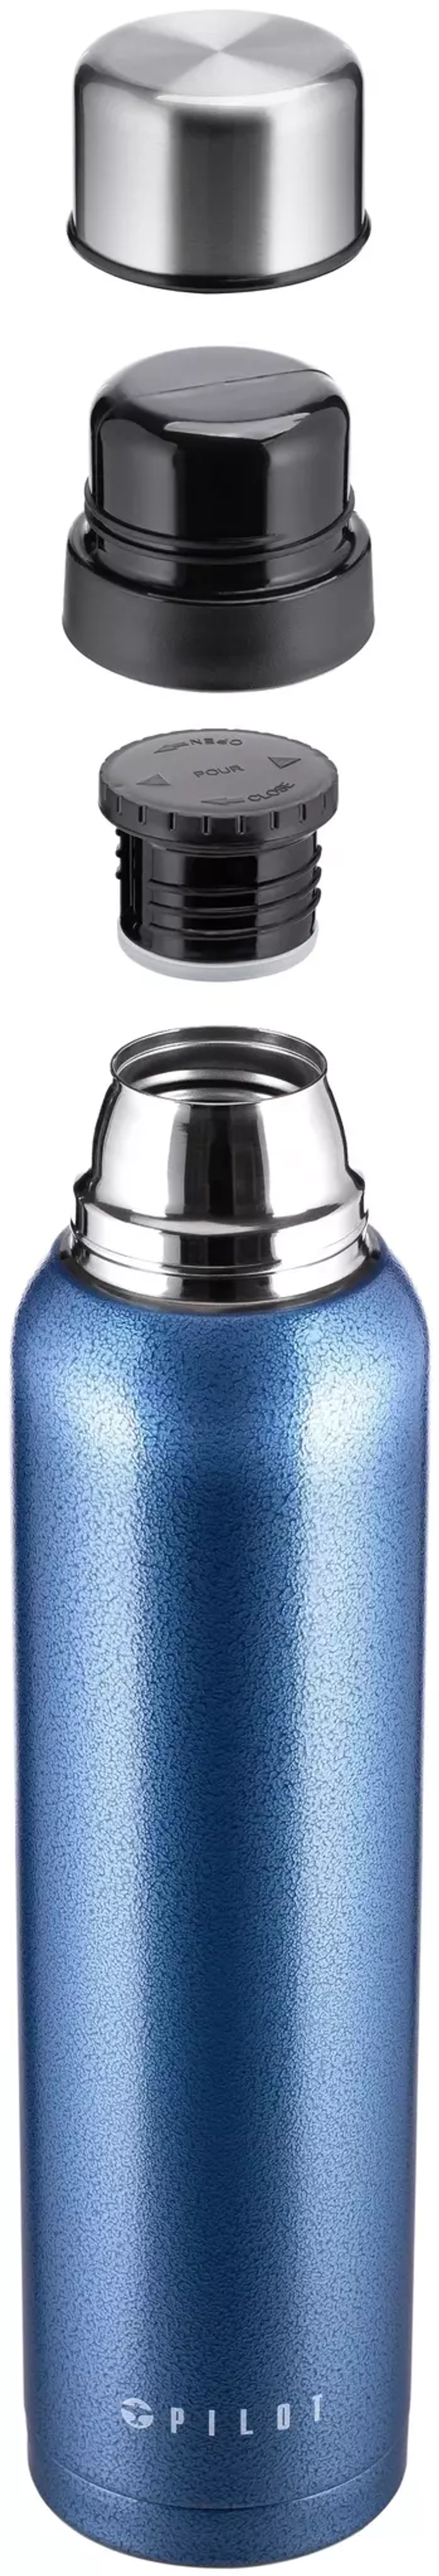 Термос 1.6 литра, голубой металик (молотковое покрытие)